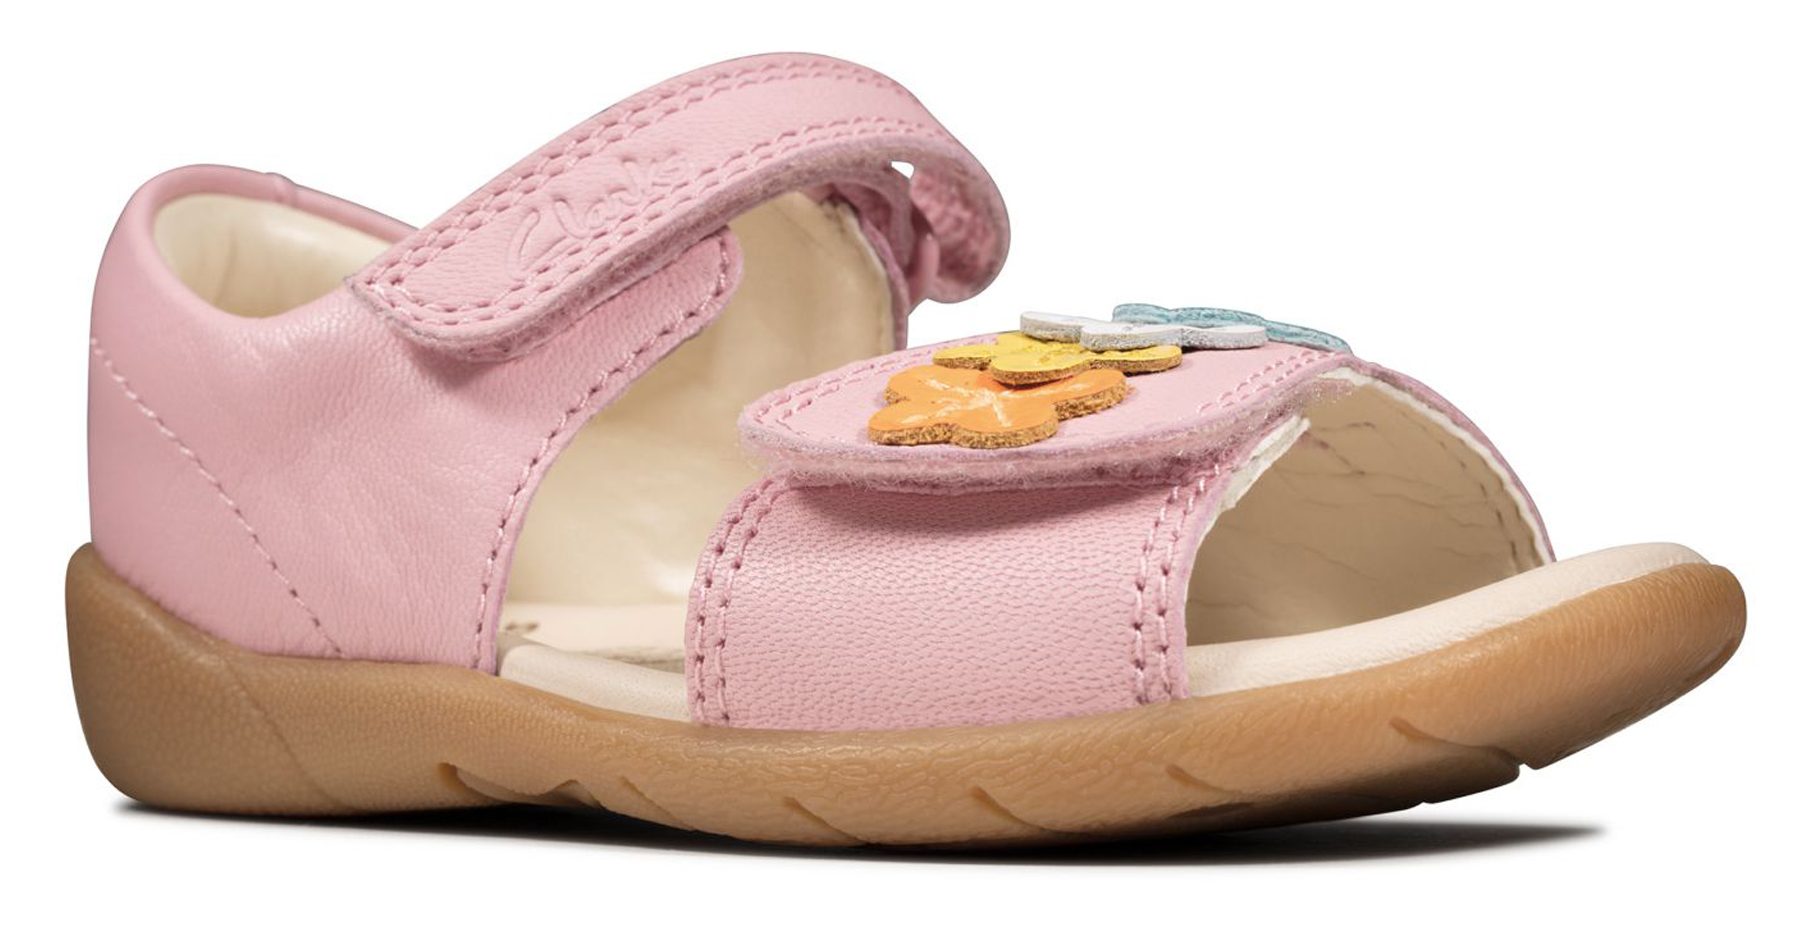 Clarks Zora Finch Toddler Dusty Pink 26150531 - Girls Sandals ...